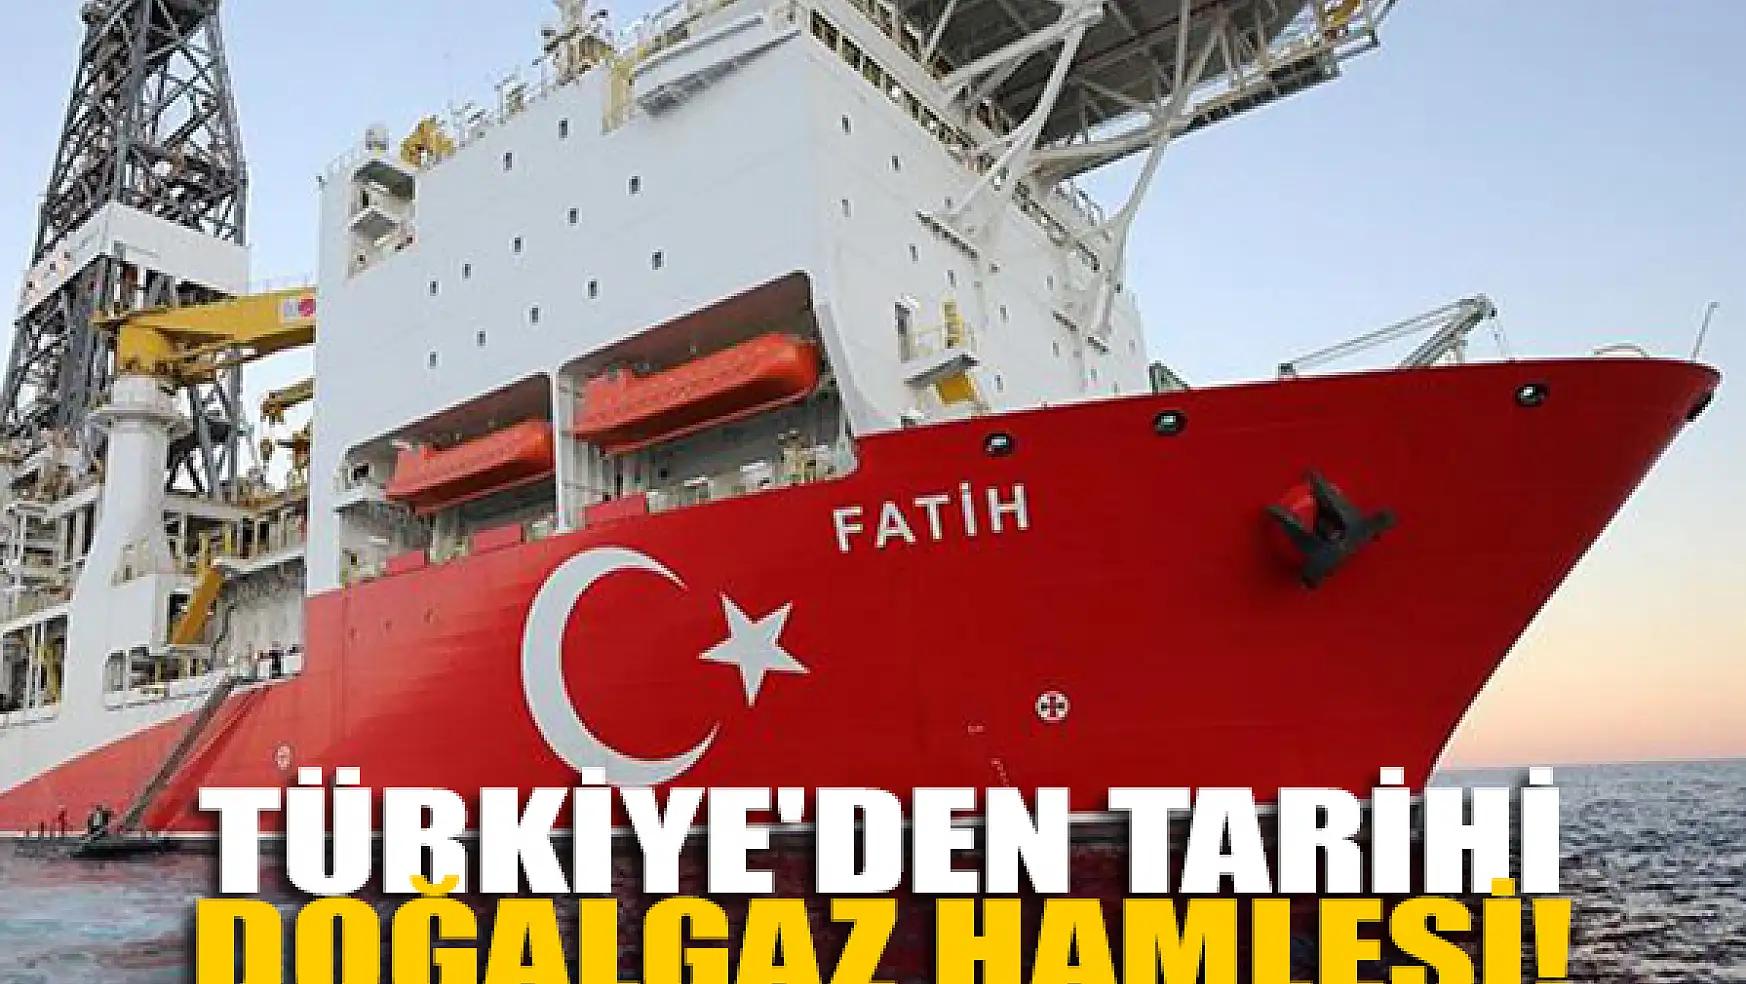 Türkiye'den tarihi doğalgaz hamlesi! Batı çılgına dönecek